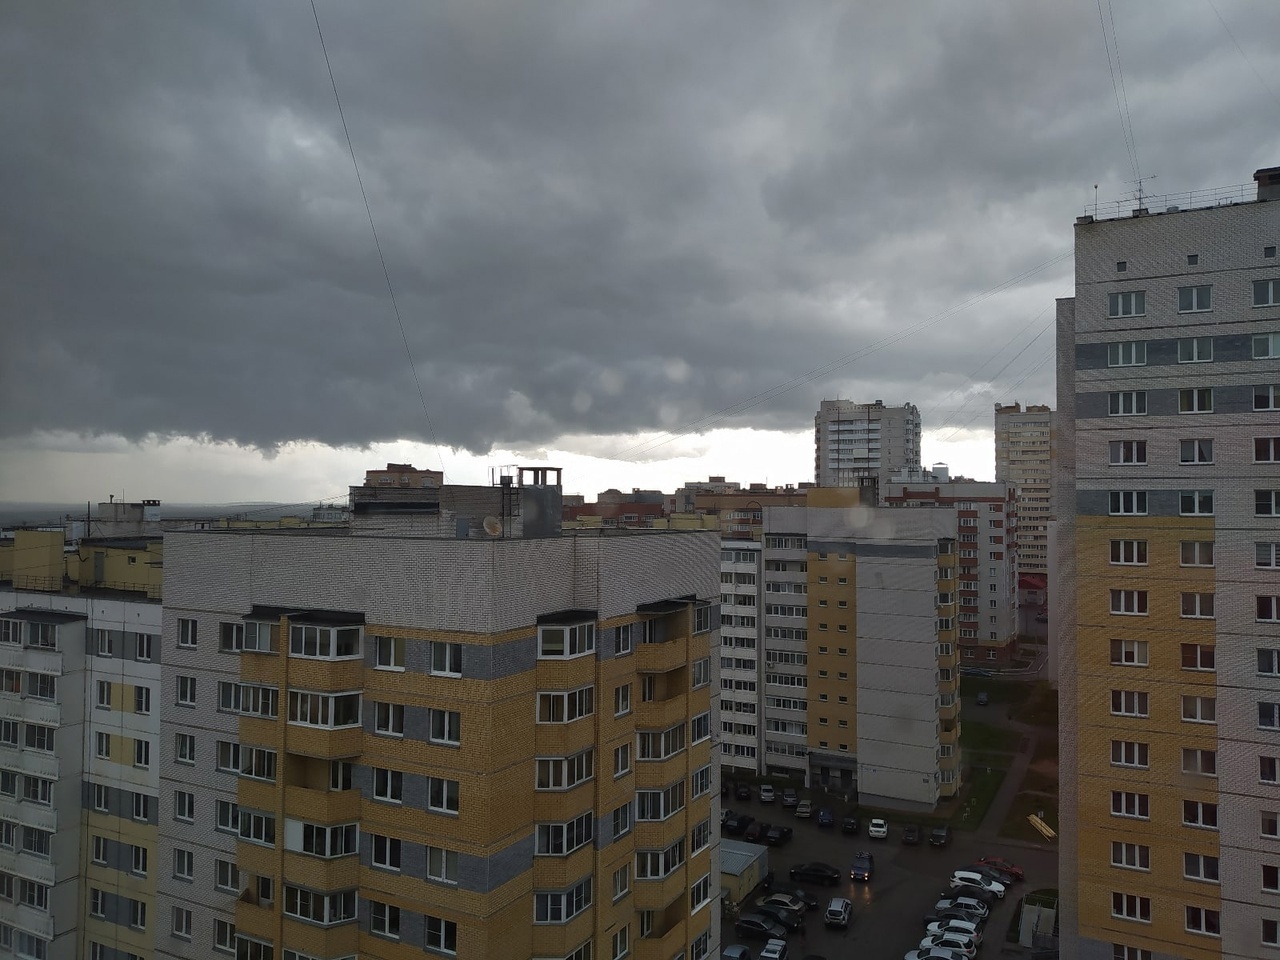 Ветер будет срывать крыши и валить деревья: на Кировскую область надвигаются град и шквалы